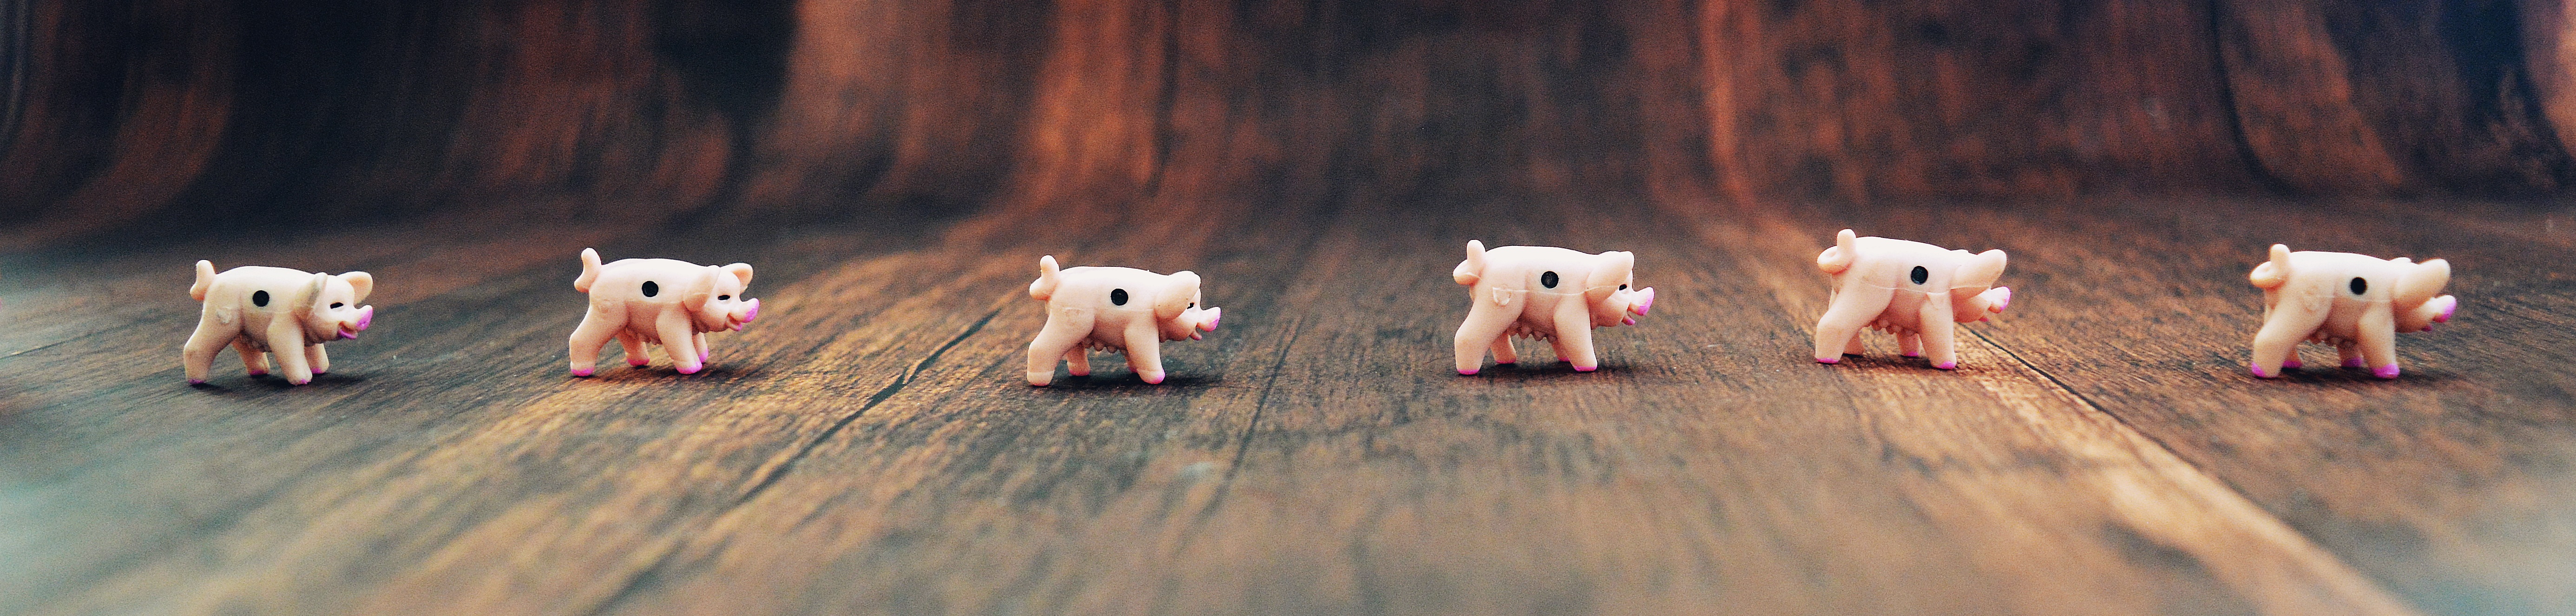 Schweinerei Schweine auf Holzboden